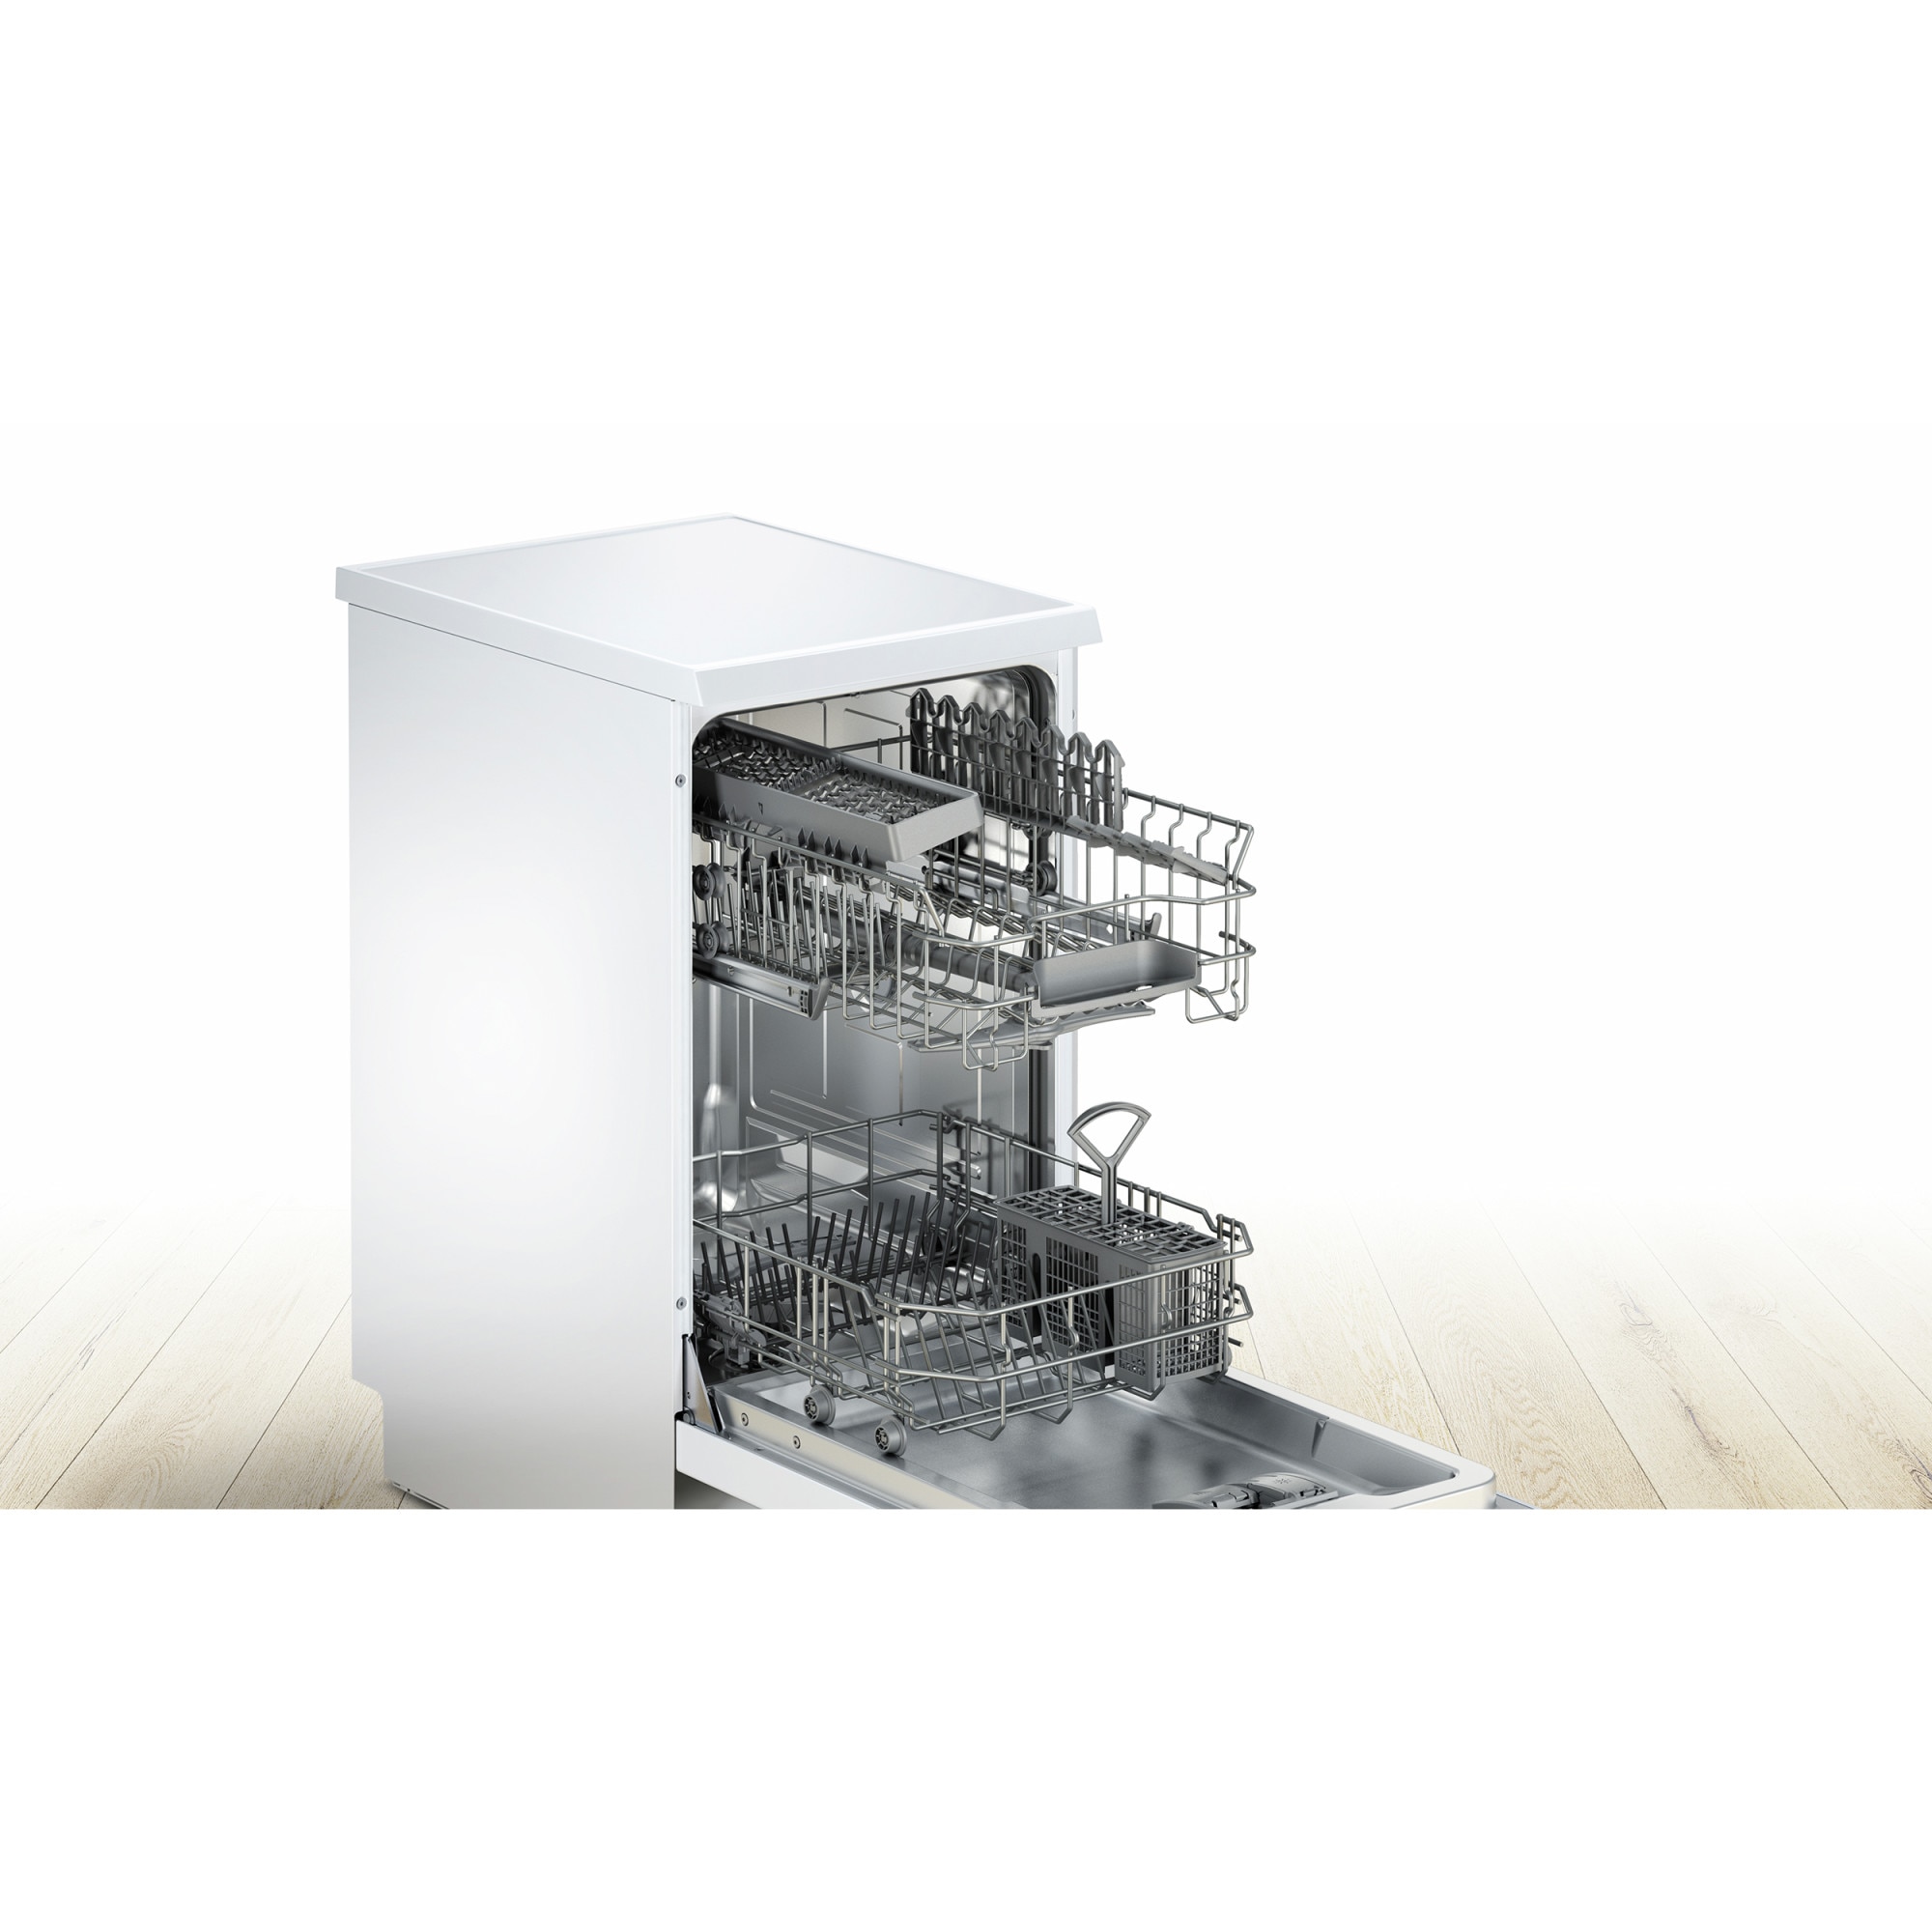 Посудомойка бош отдельностоящая. Посудомоечная машина Bosch sps25cw01r. Посудомоечная машина Bosch SPS 25dw03 r. Bosch sps25fw11r. Посудомоечная машина Bosch SPS 25fw03 e.